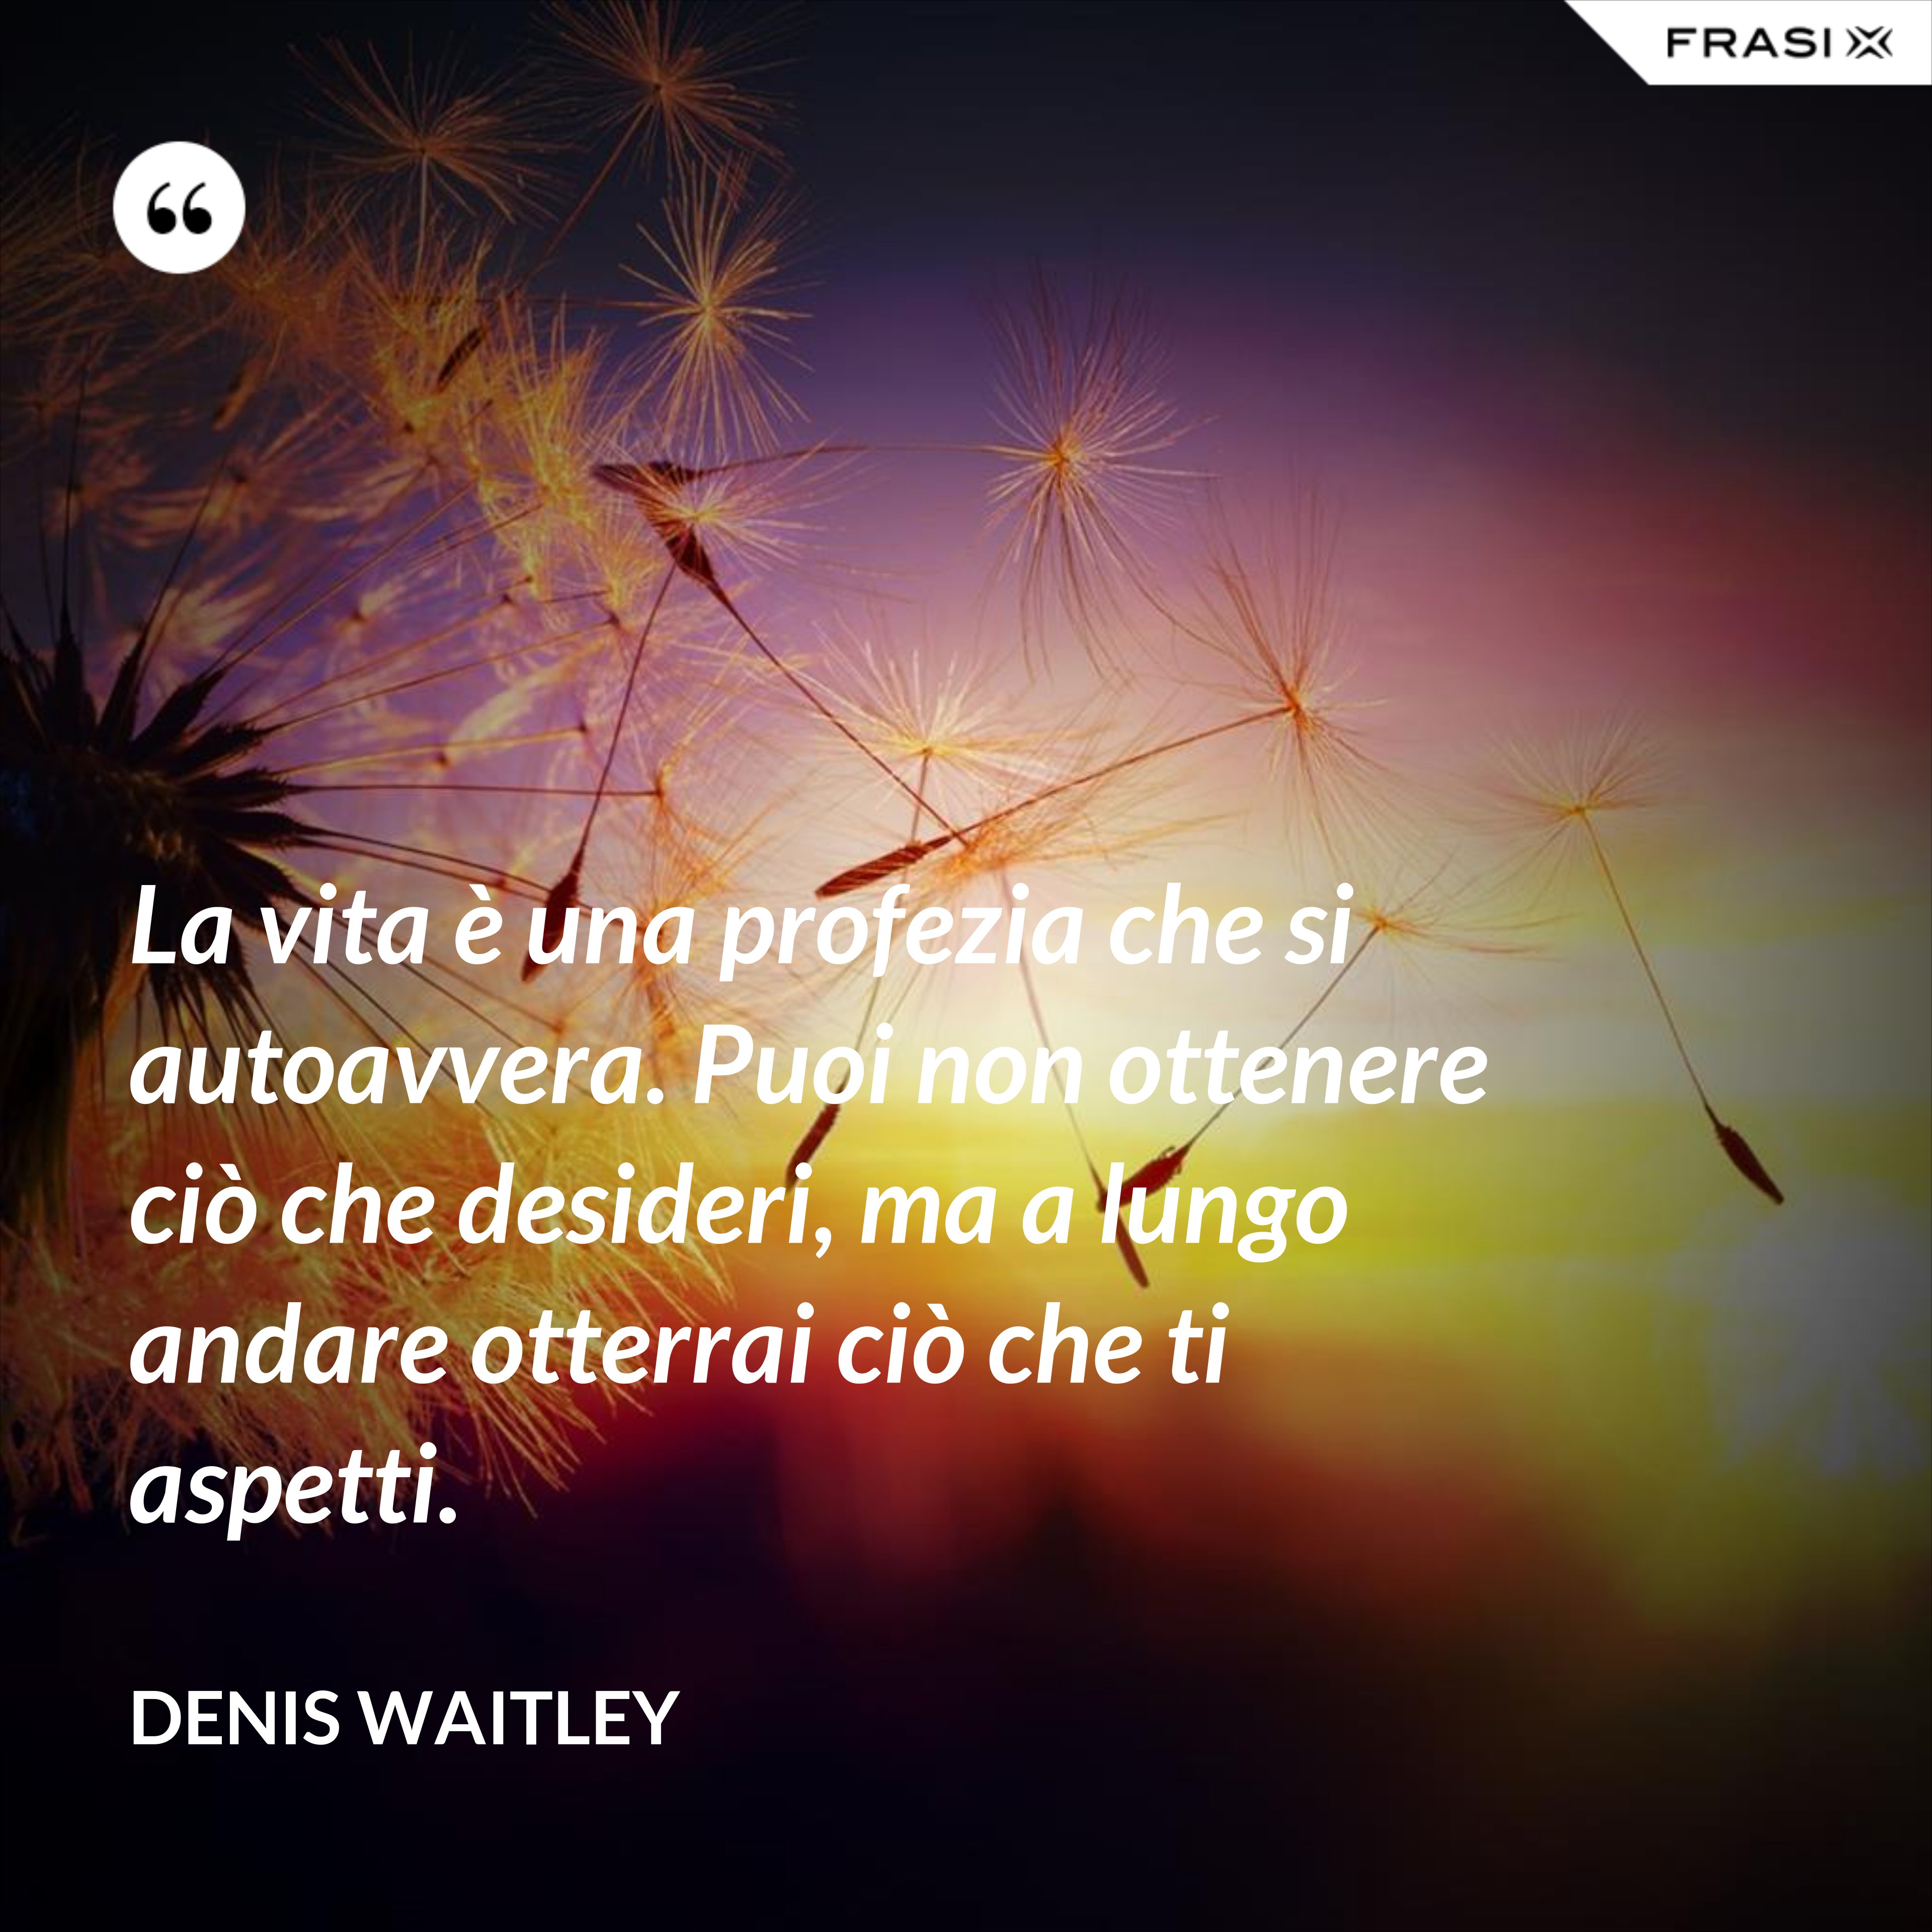 La vita è una profezia che si autoavvera. Puoi non ottenere ciò che desideri, ma a lungo andare otterrai ciò che ti aspetti. - Denis Waitley